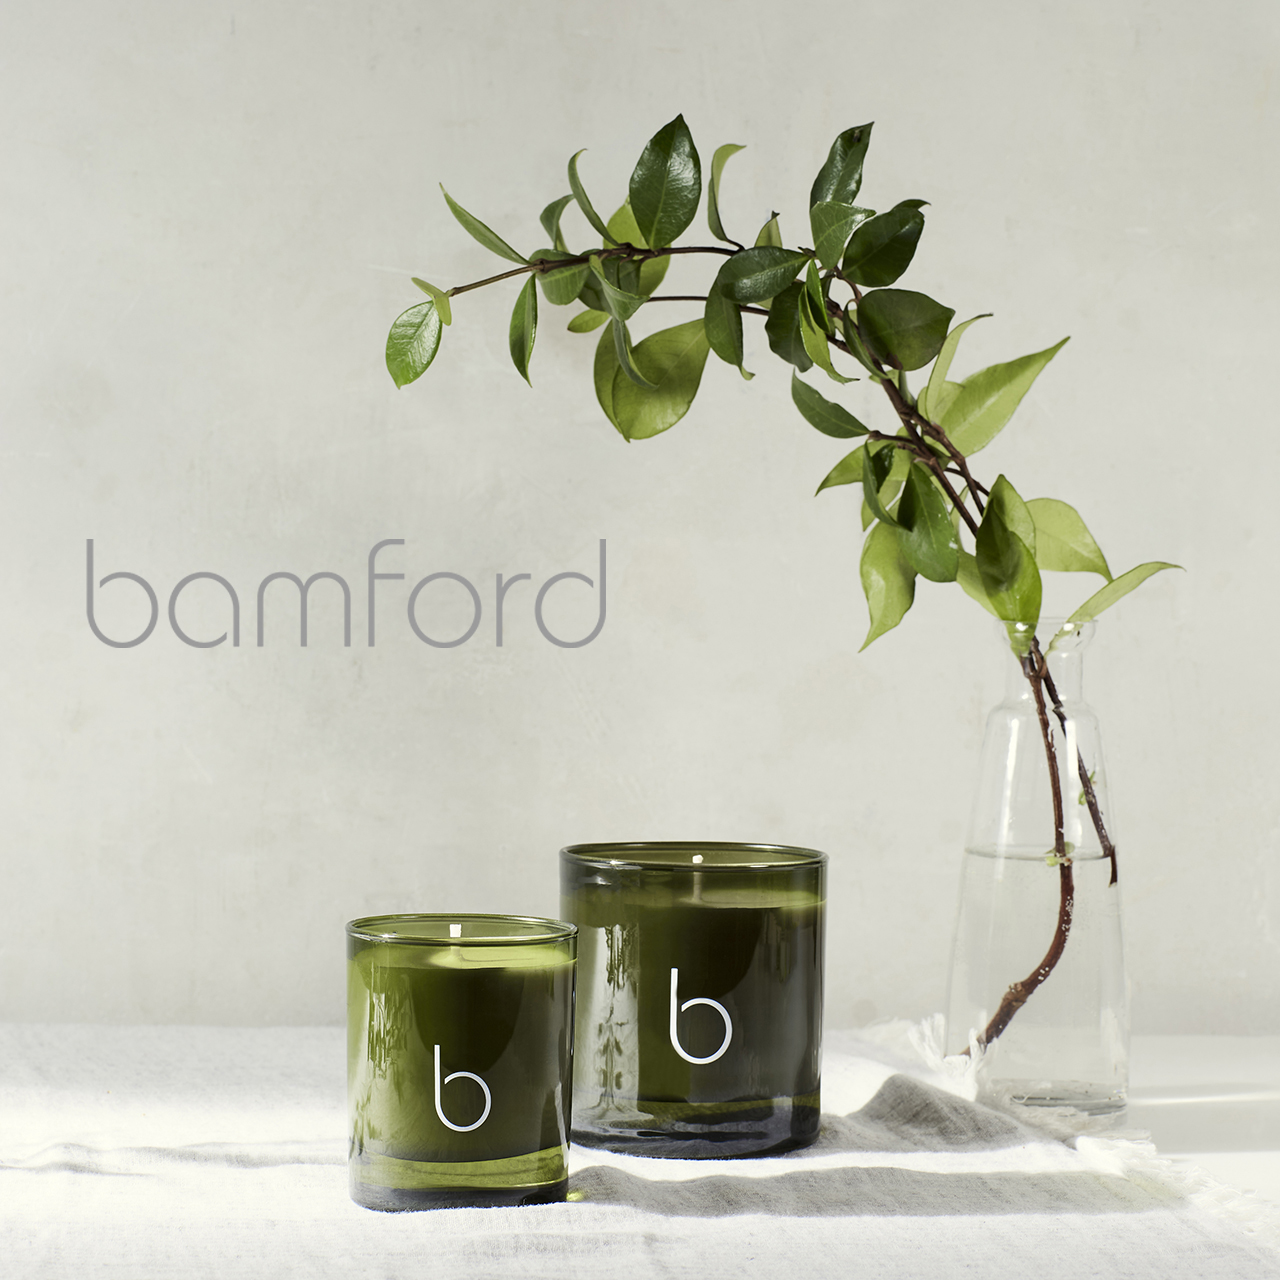 bamford,生活選物,生活雜貨,英國品牌,英國香氛品牌,生活品牌,香氛品牌